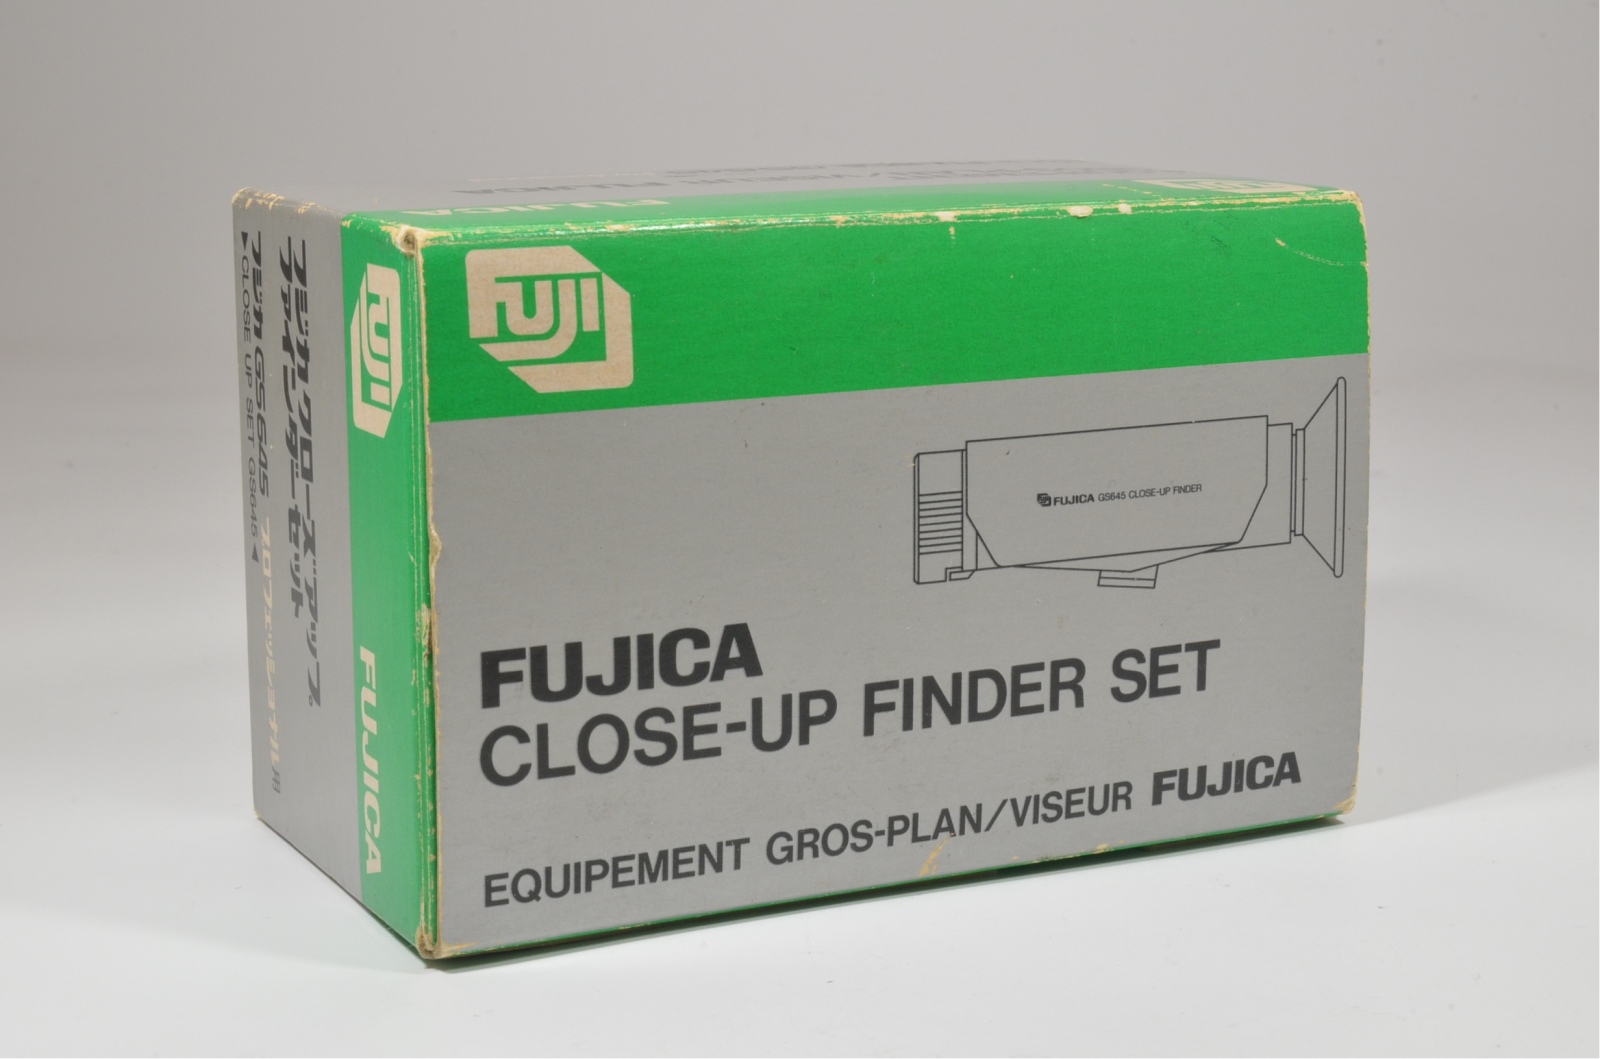 fuji fujifilm fujica gs645 close-up finder set very rare!